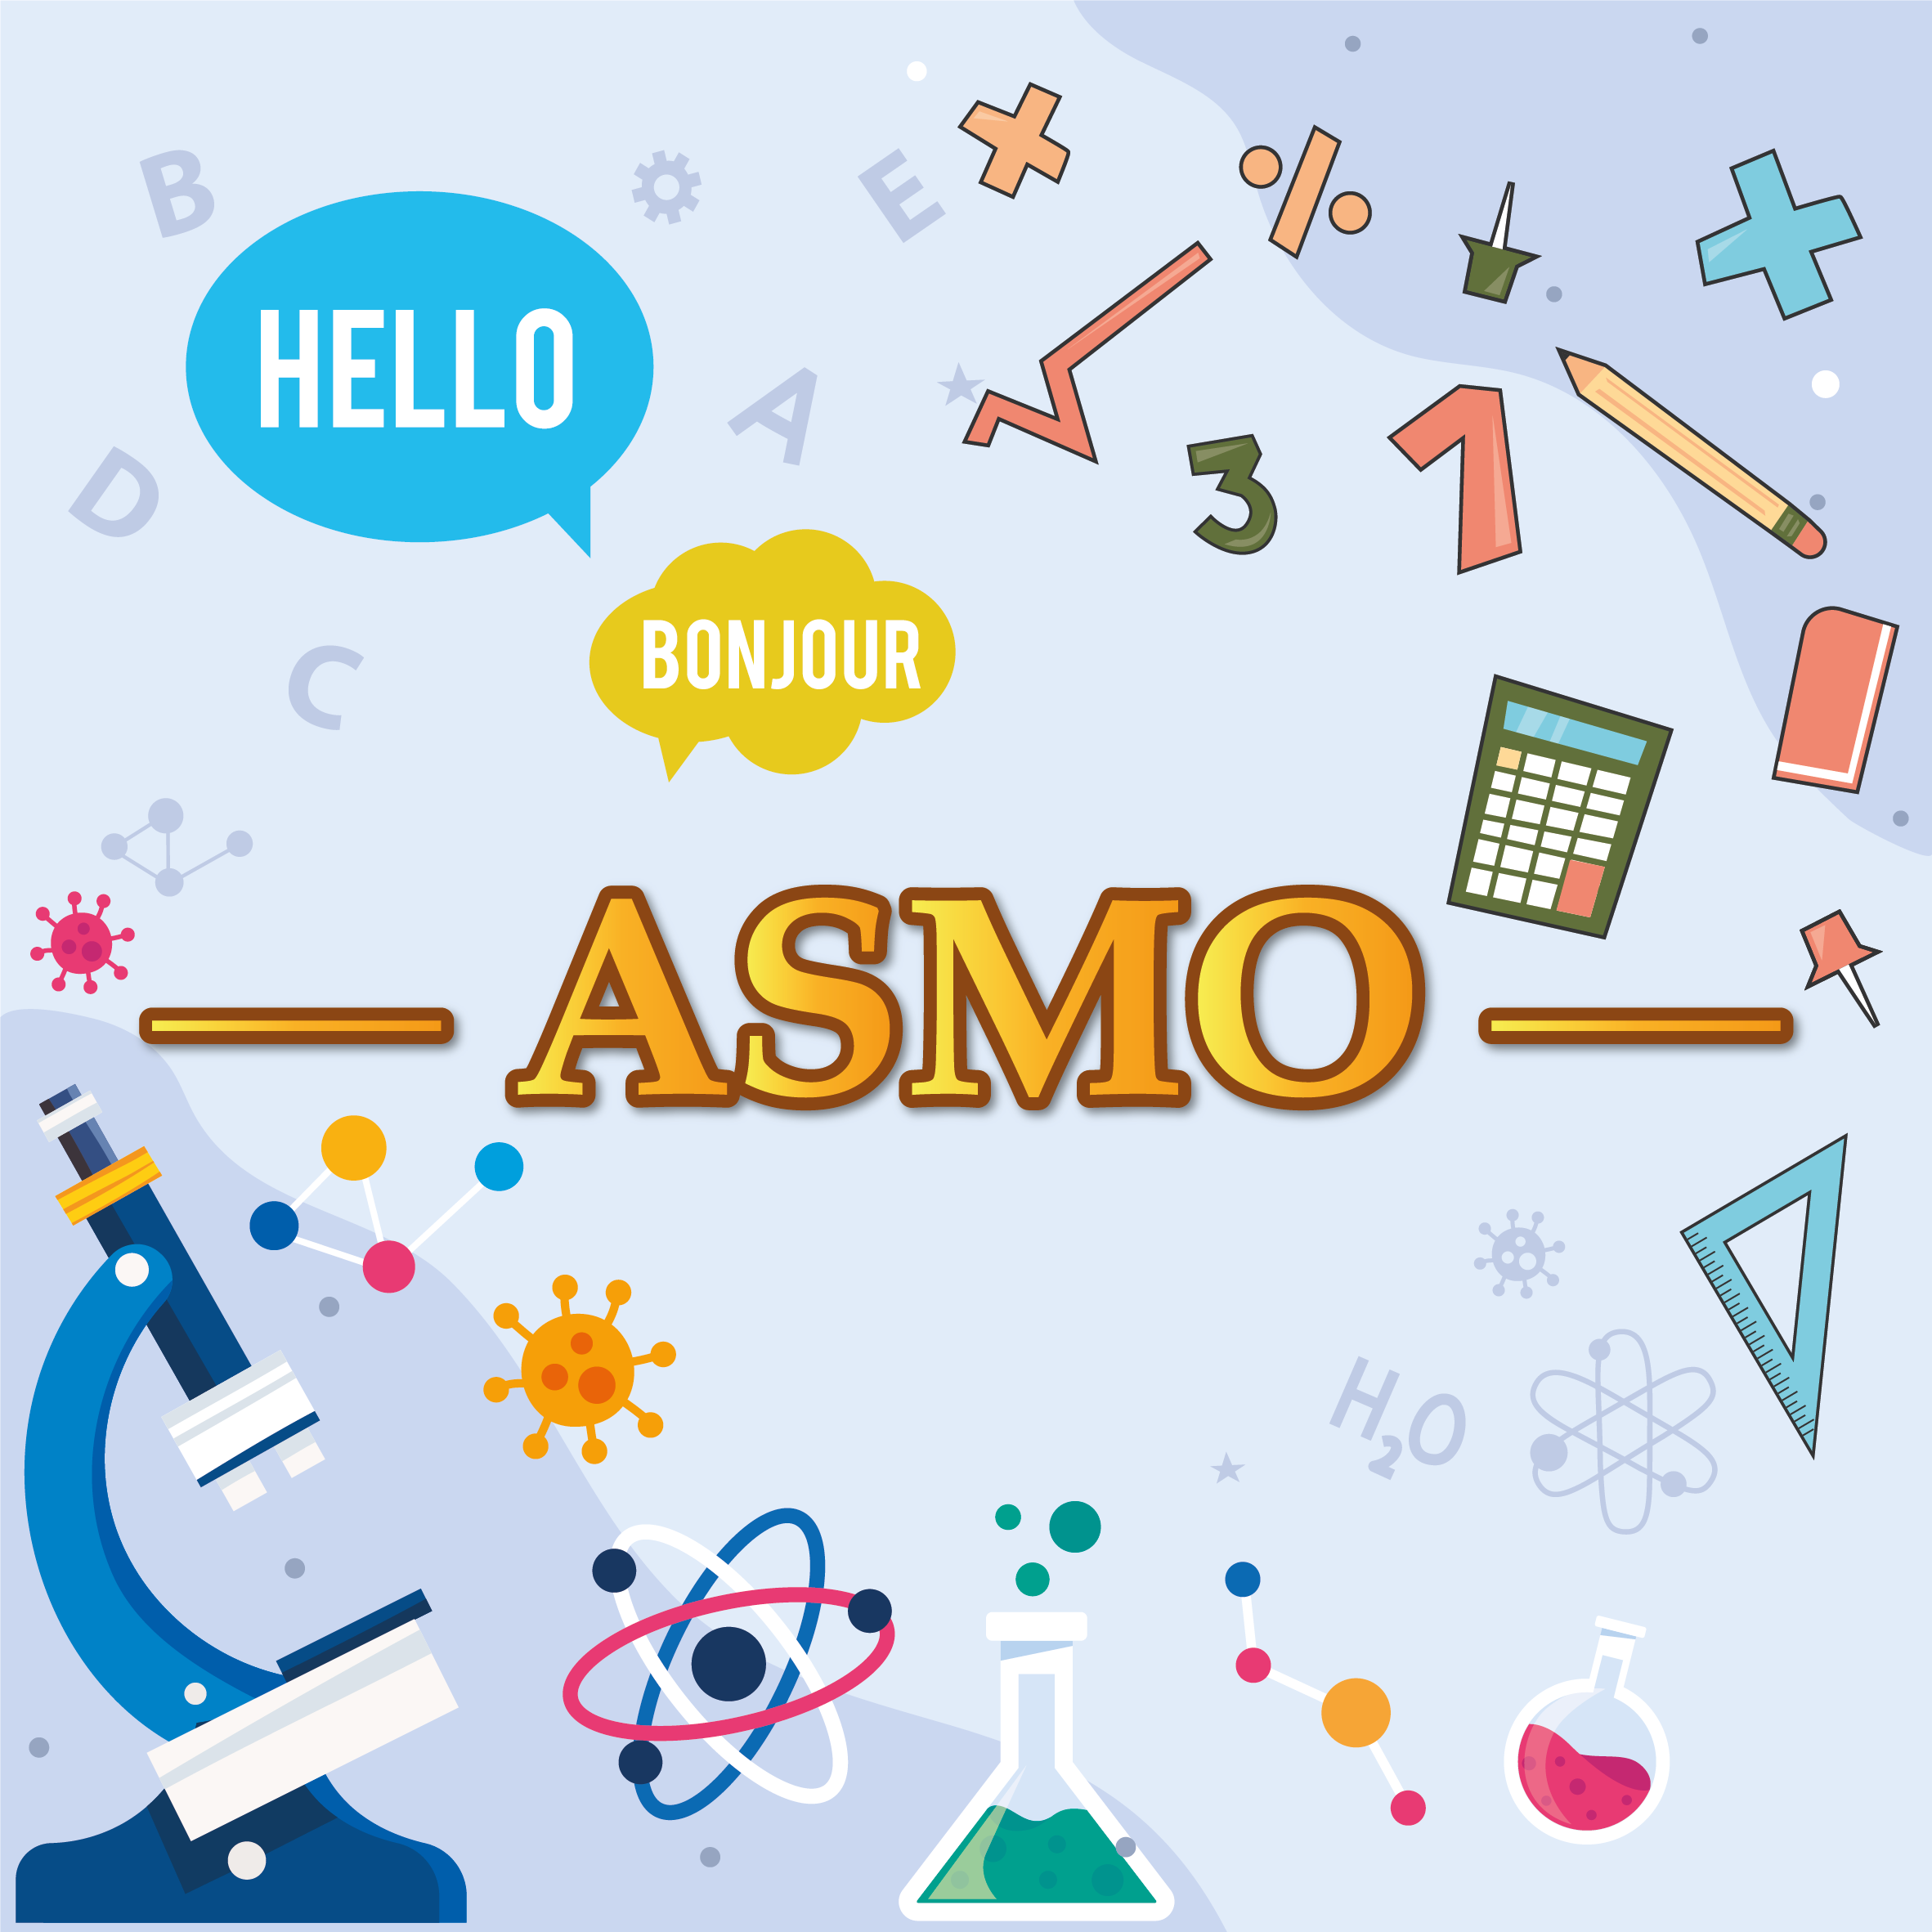 Olympic Quốc tế Khoa học, Toán và Tiếng Anh - ASMO 2023 đã chính thức bắt đầu